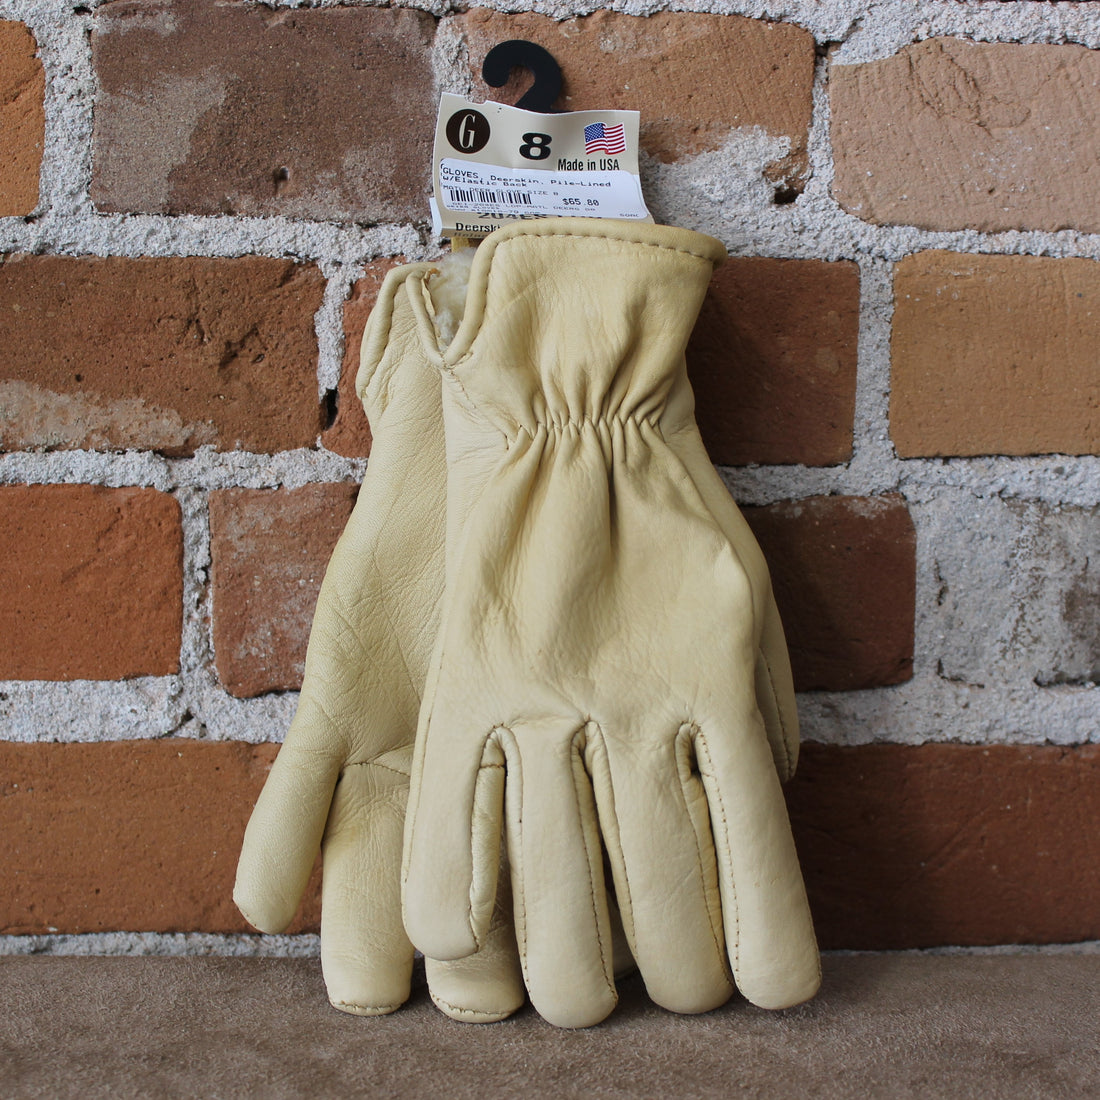 Pile-line Tan Deerskin Gloves W/ Elastic Back view of gloves